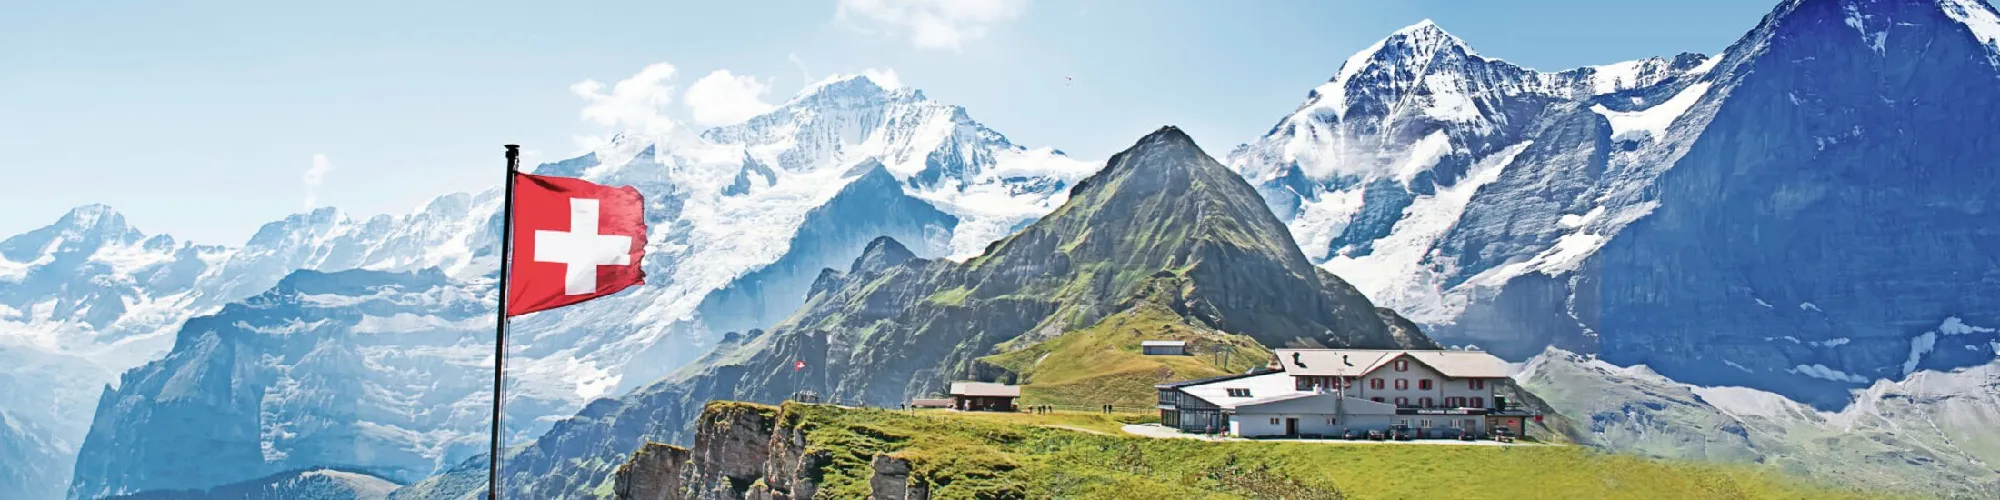 Hotels in der Schweiz background image